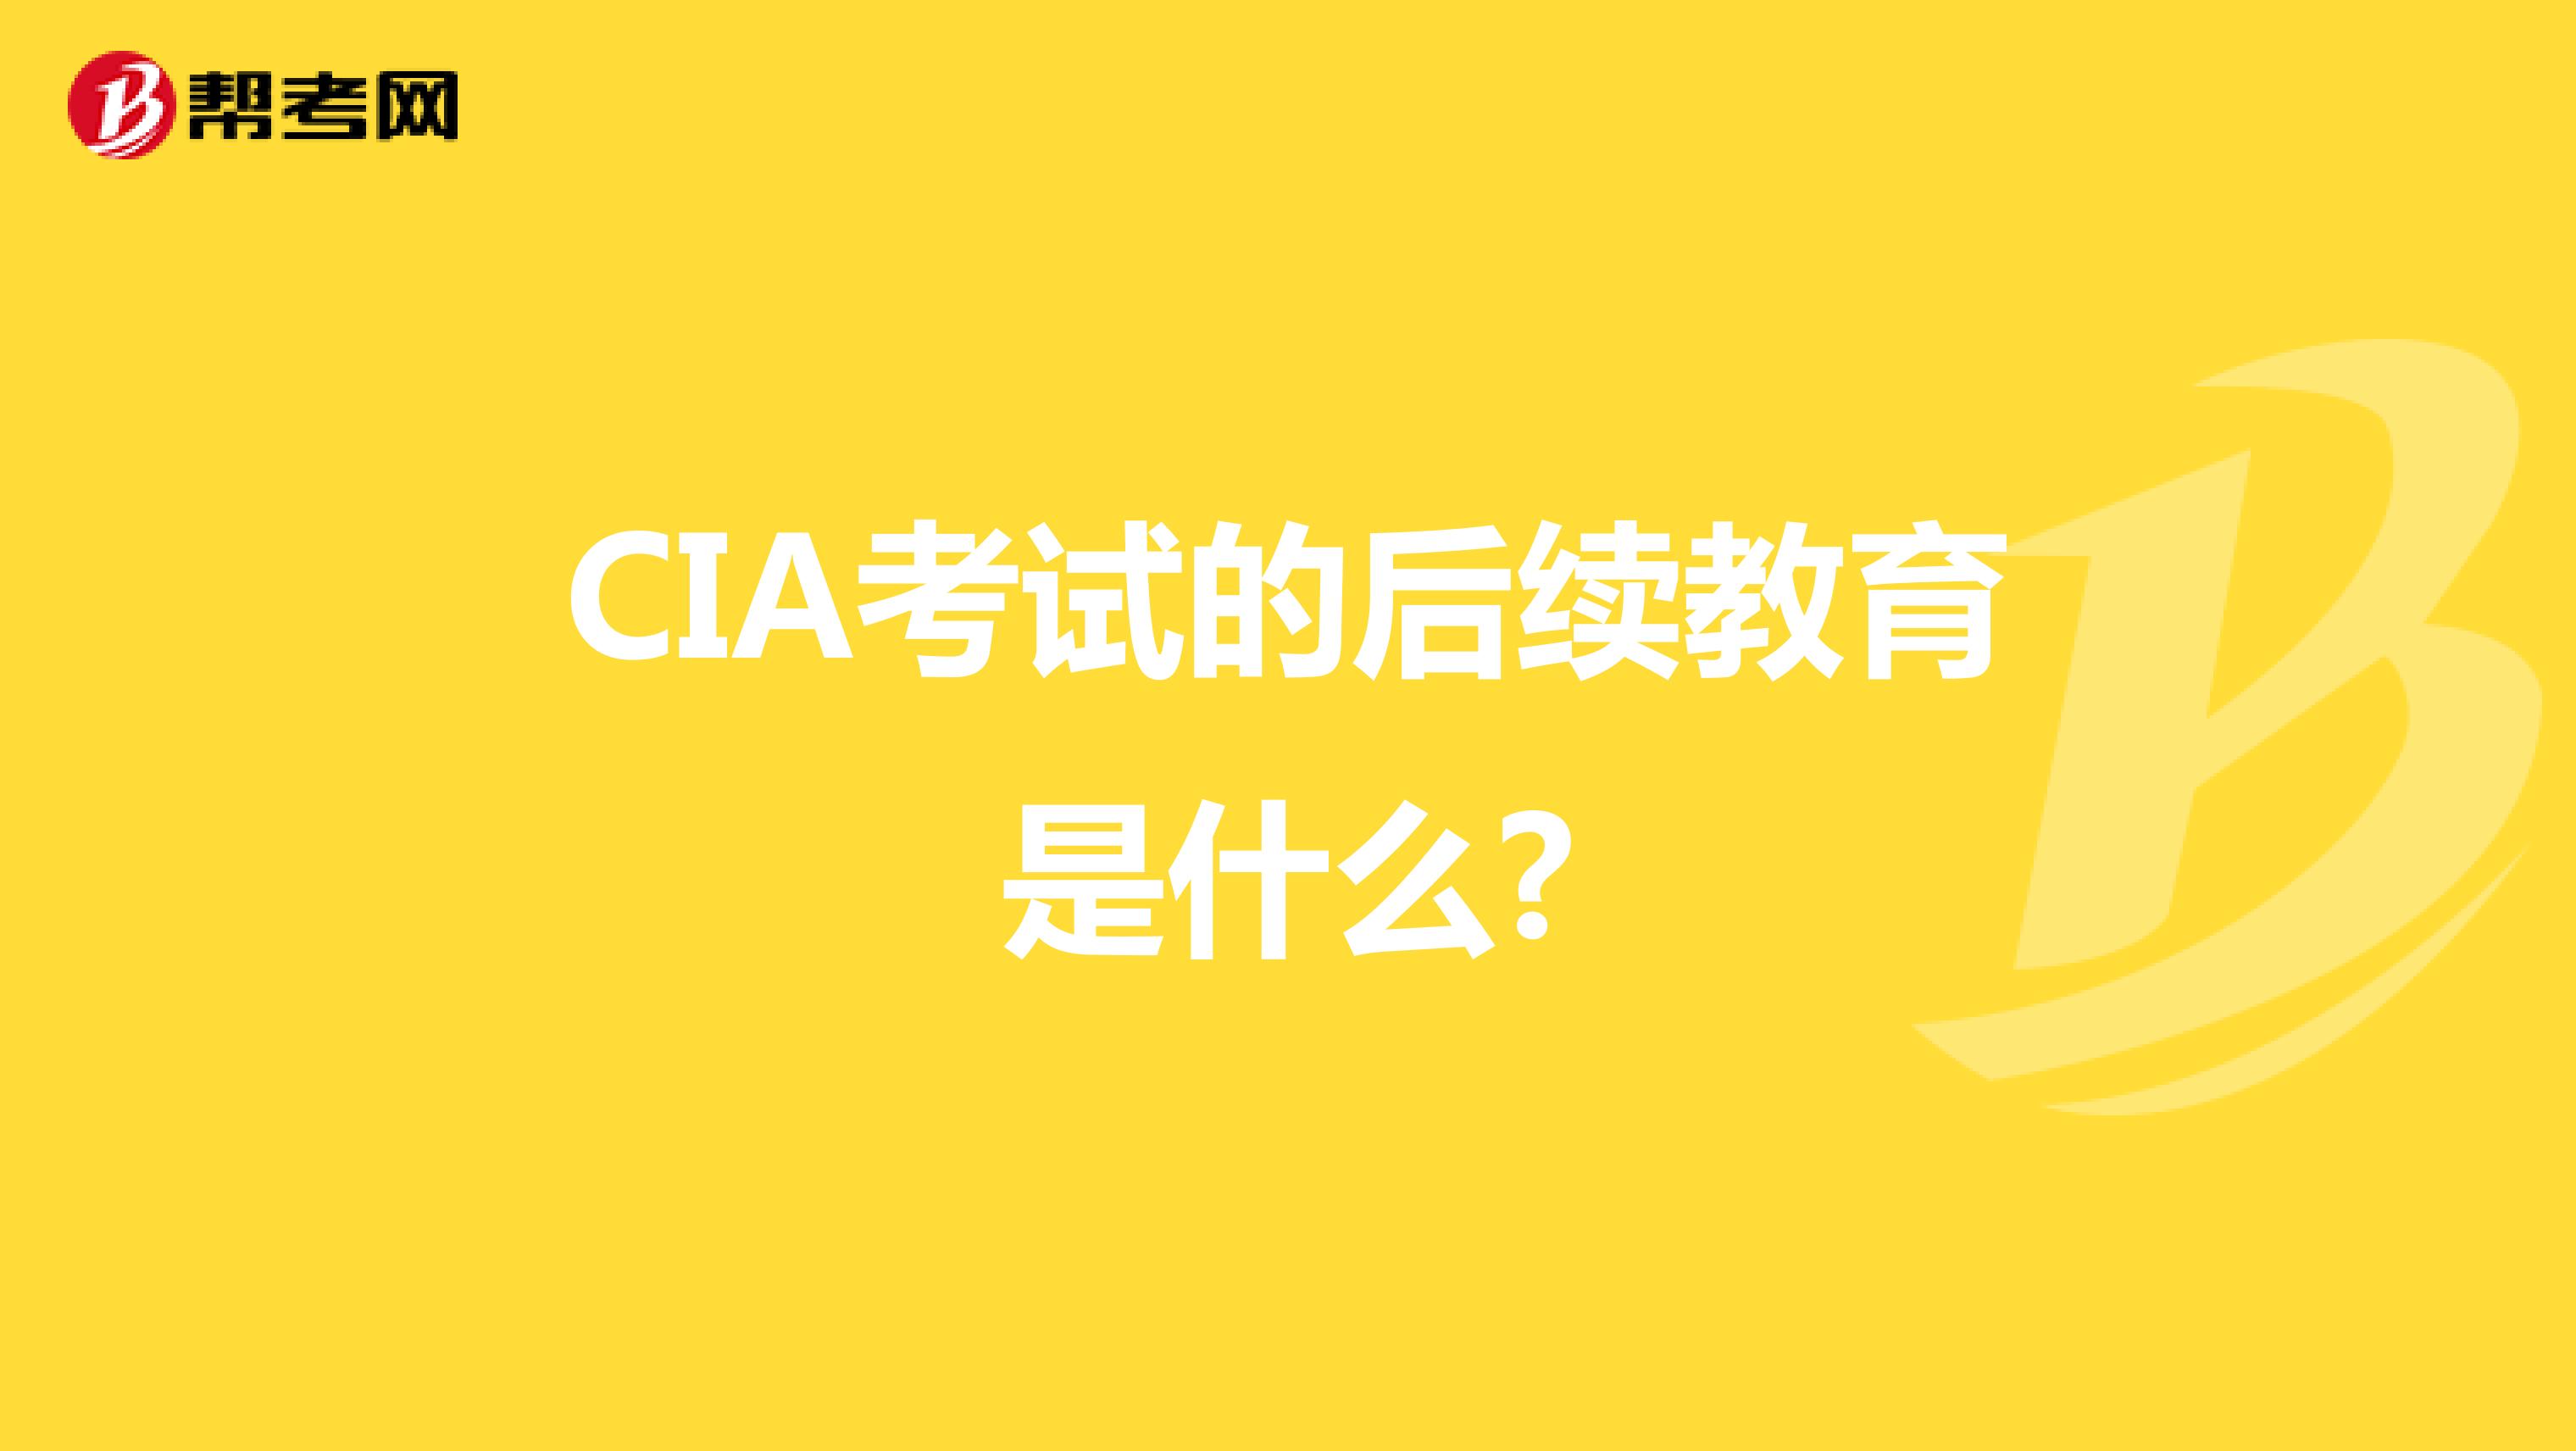 CIA考试的后续教育是什么?